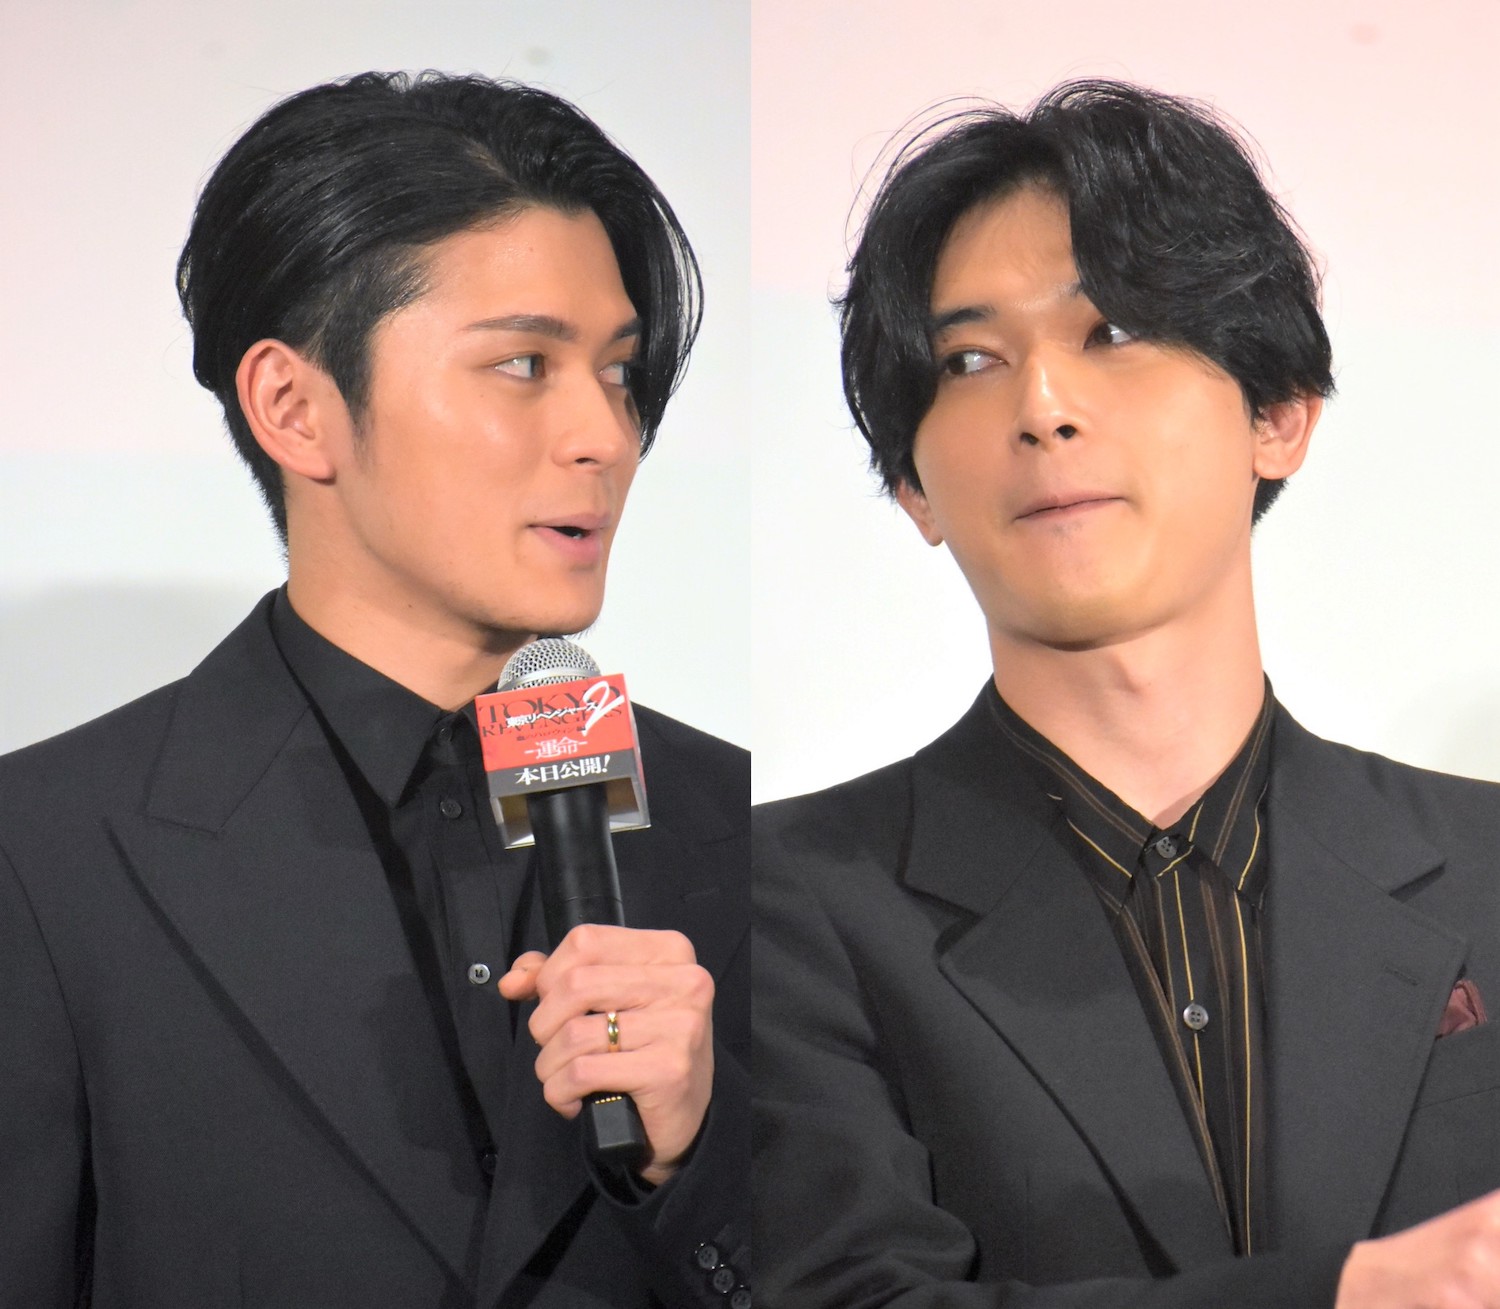 4月21日、映画『東京リベンジャーズ2 血のハロウィン編 -運命-』初日舞台挨拶に登場した眞栄田郷敦と吉沢亮。撮影裏話が披露された